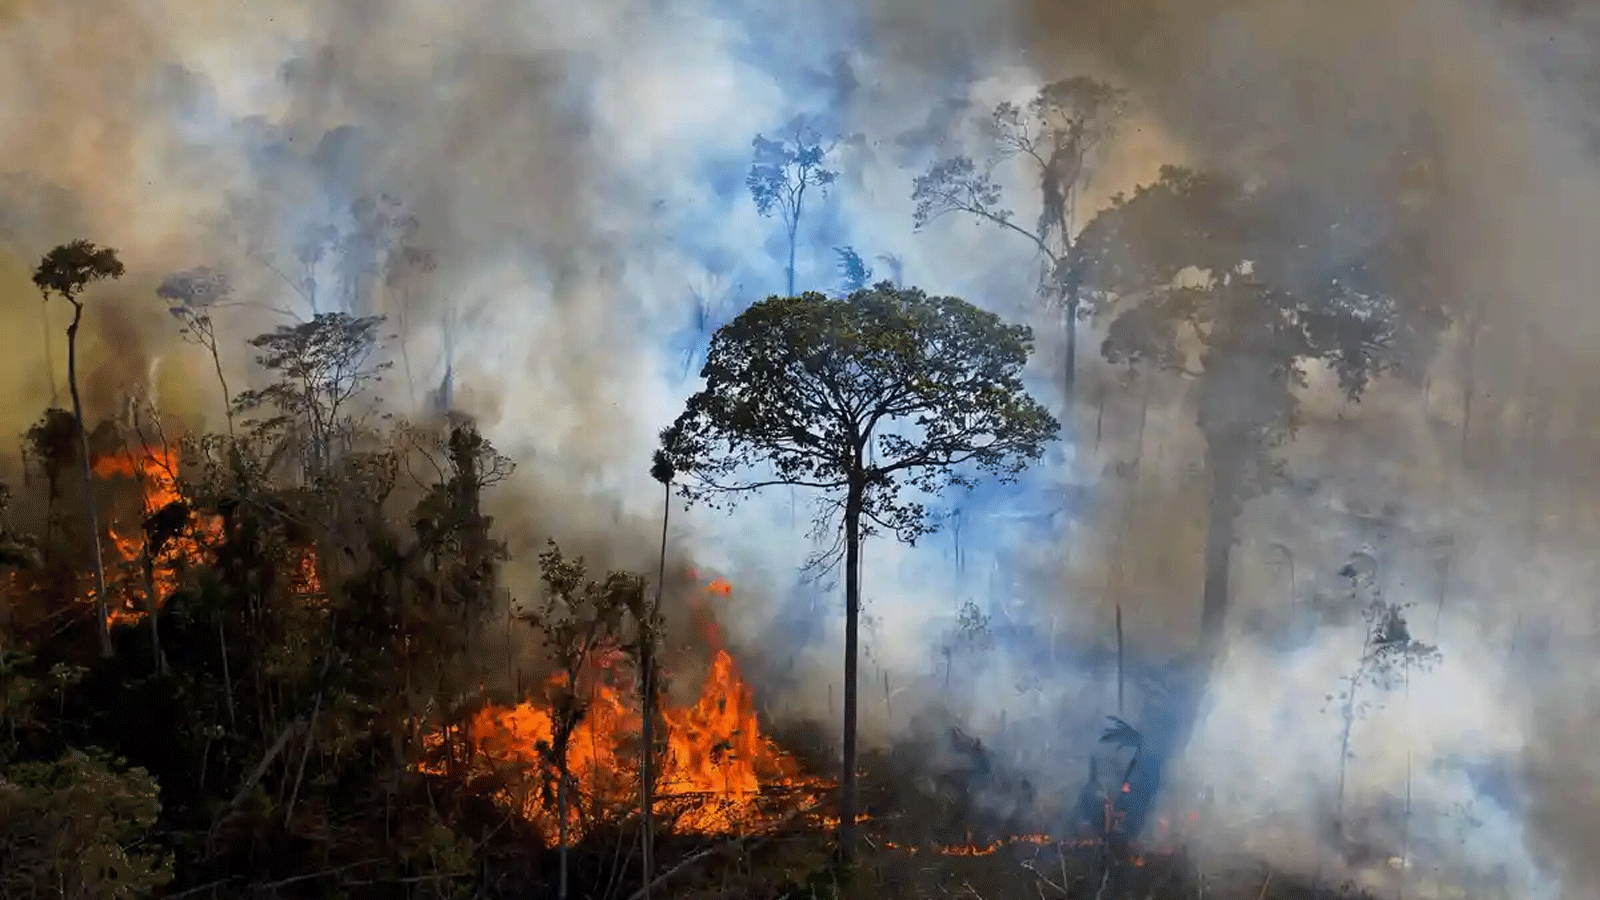 الدخان يتصاعد من حريق أُضرِمَ بشكلٍ غير قانوني في محمية غابات مطيرة جنوب نوفو بروغرسو في ولاية بارا، البرازيل.